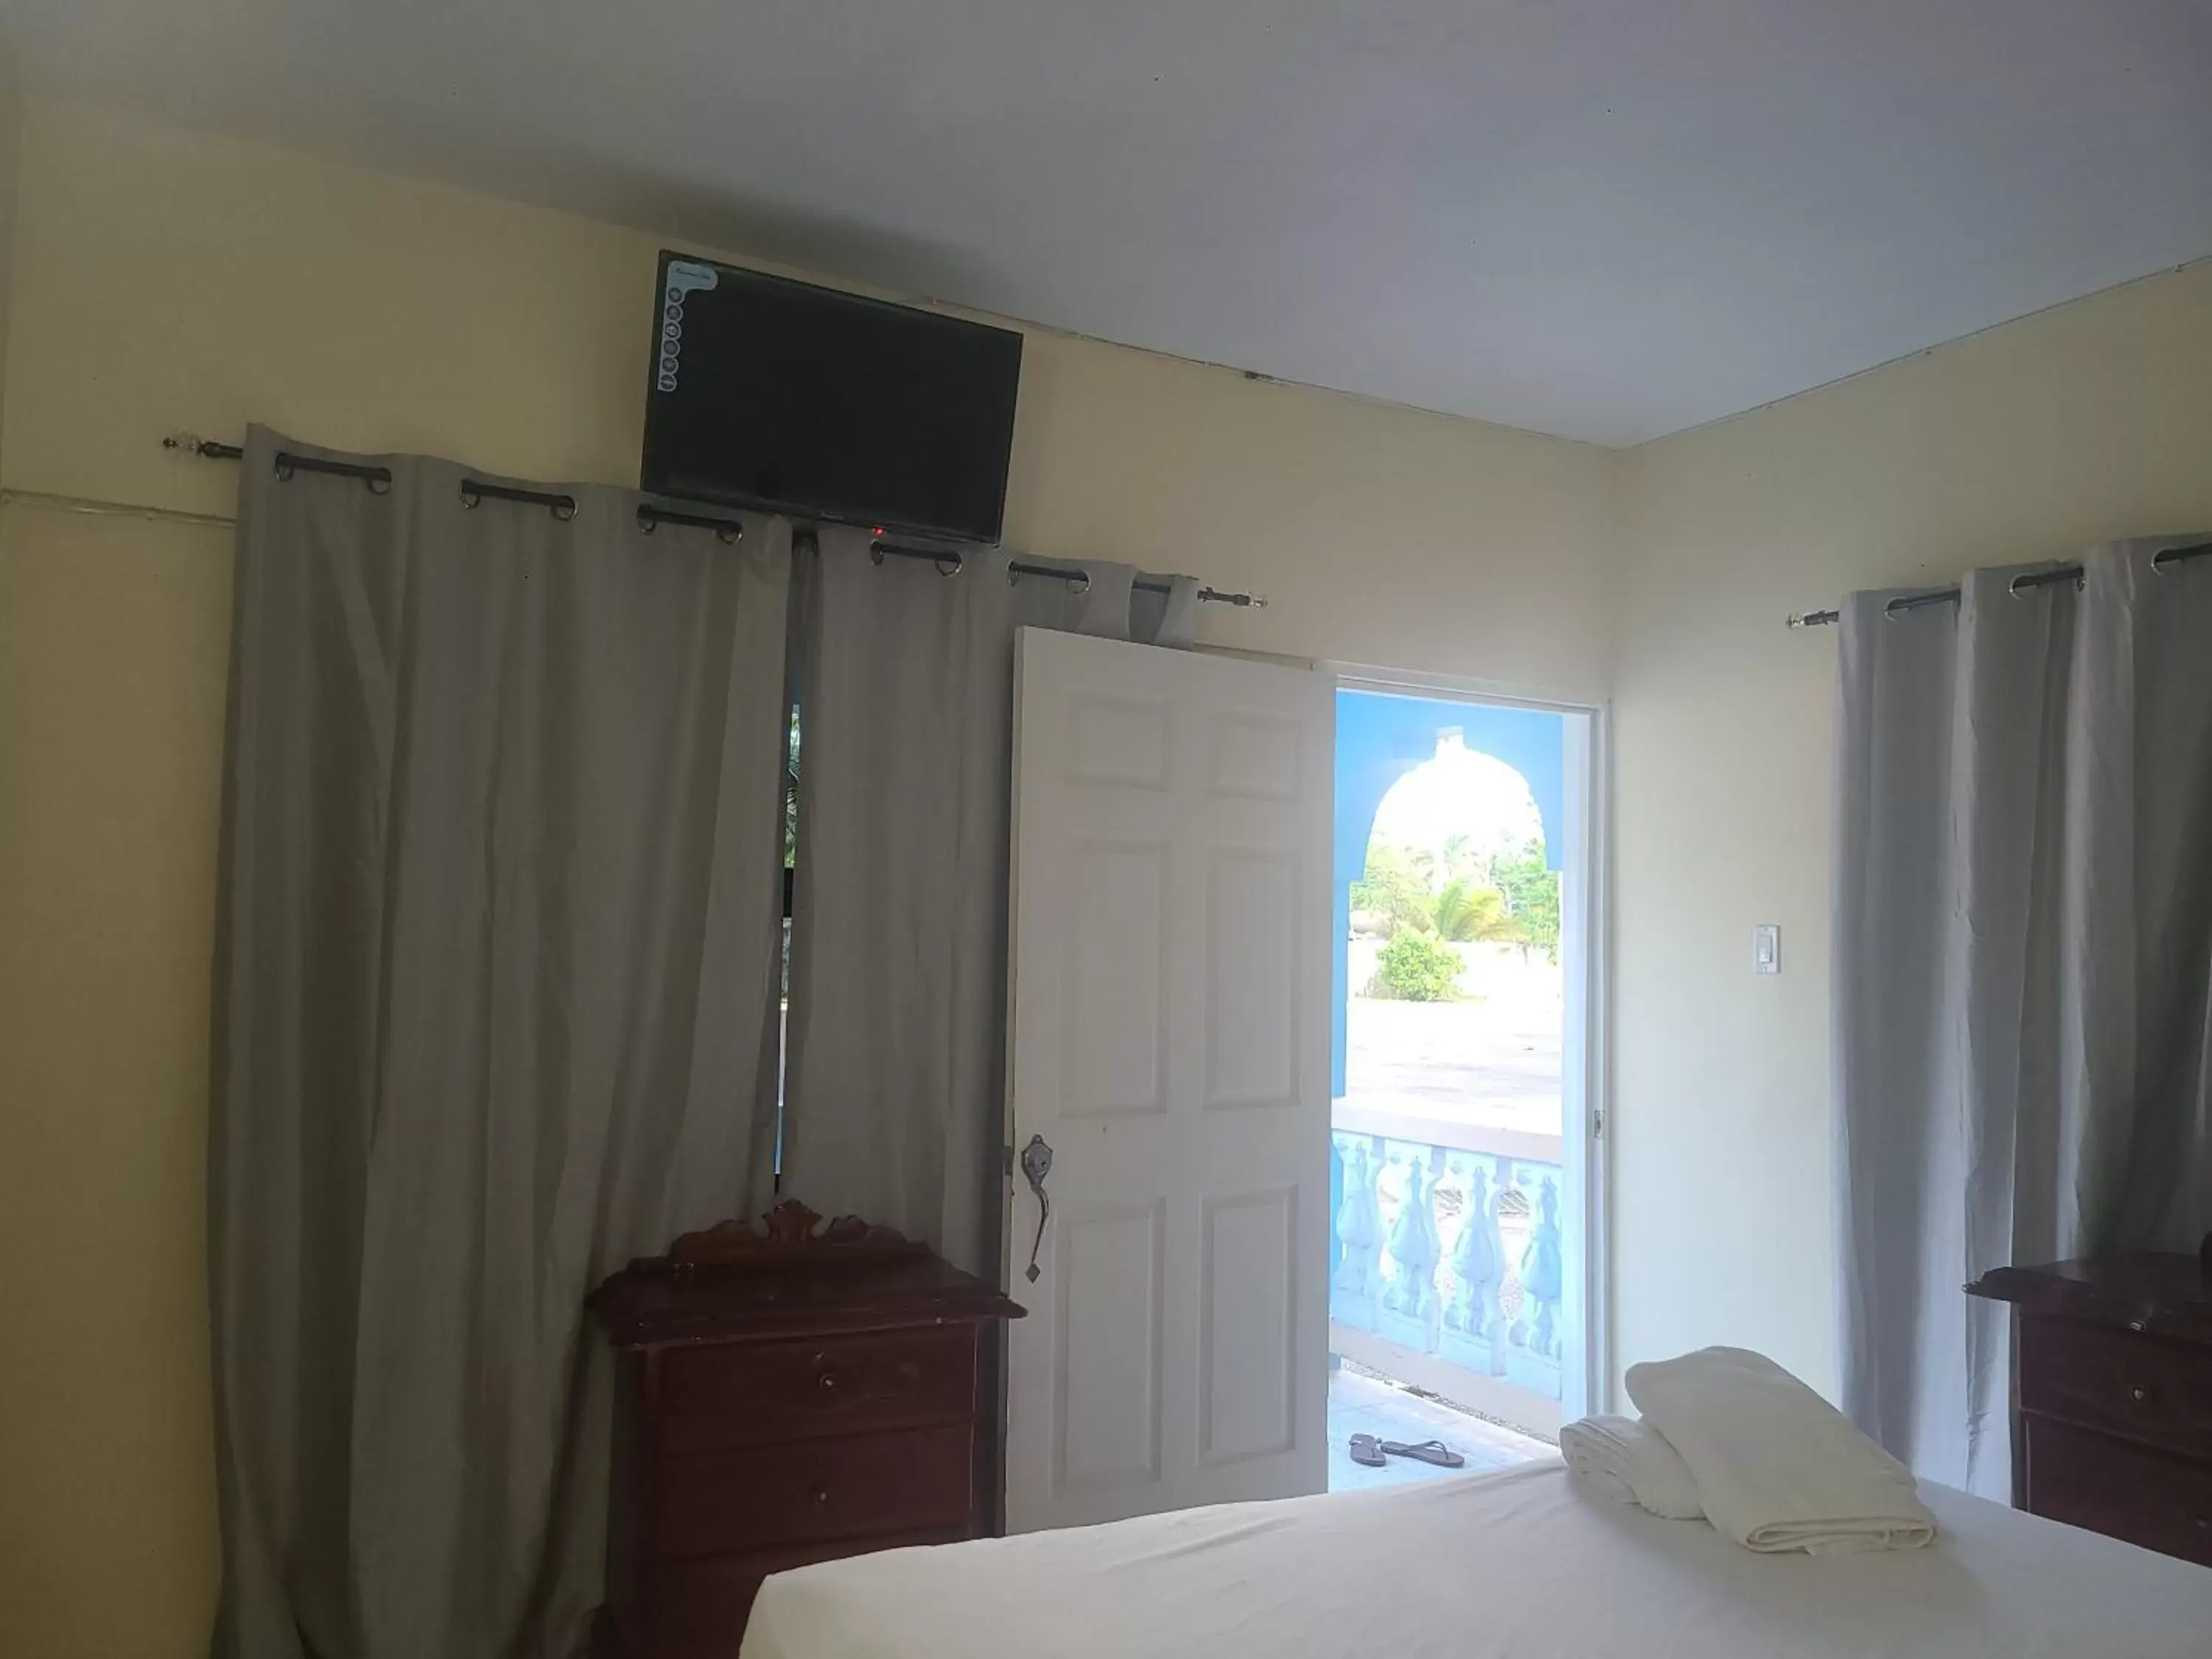 Bedroom, TV/Entertainment Center in Tamboo Resort